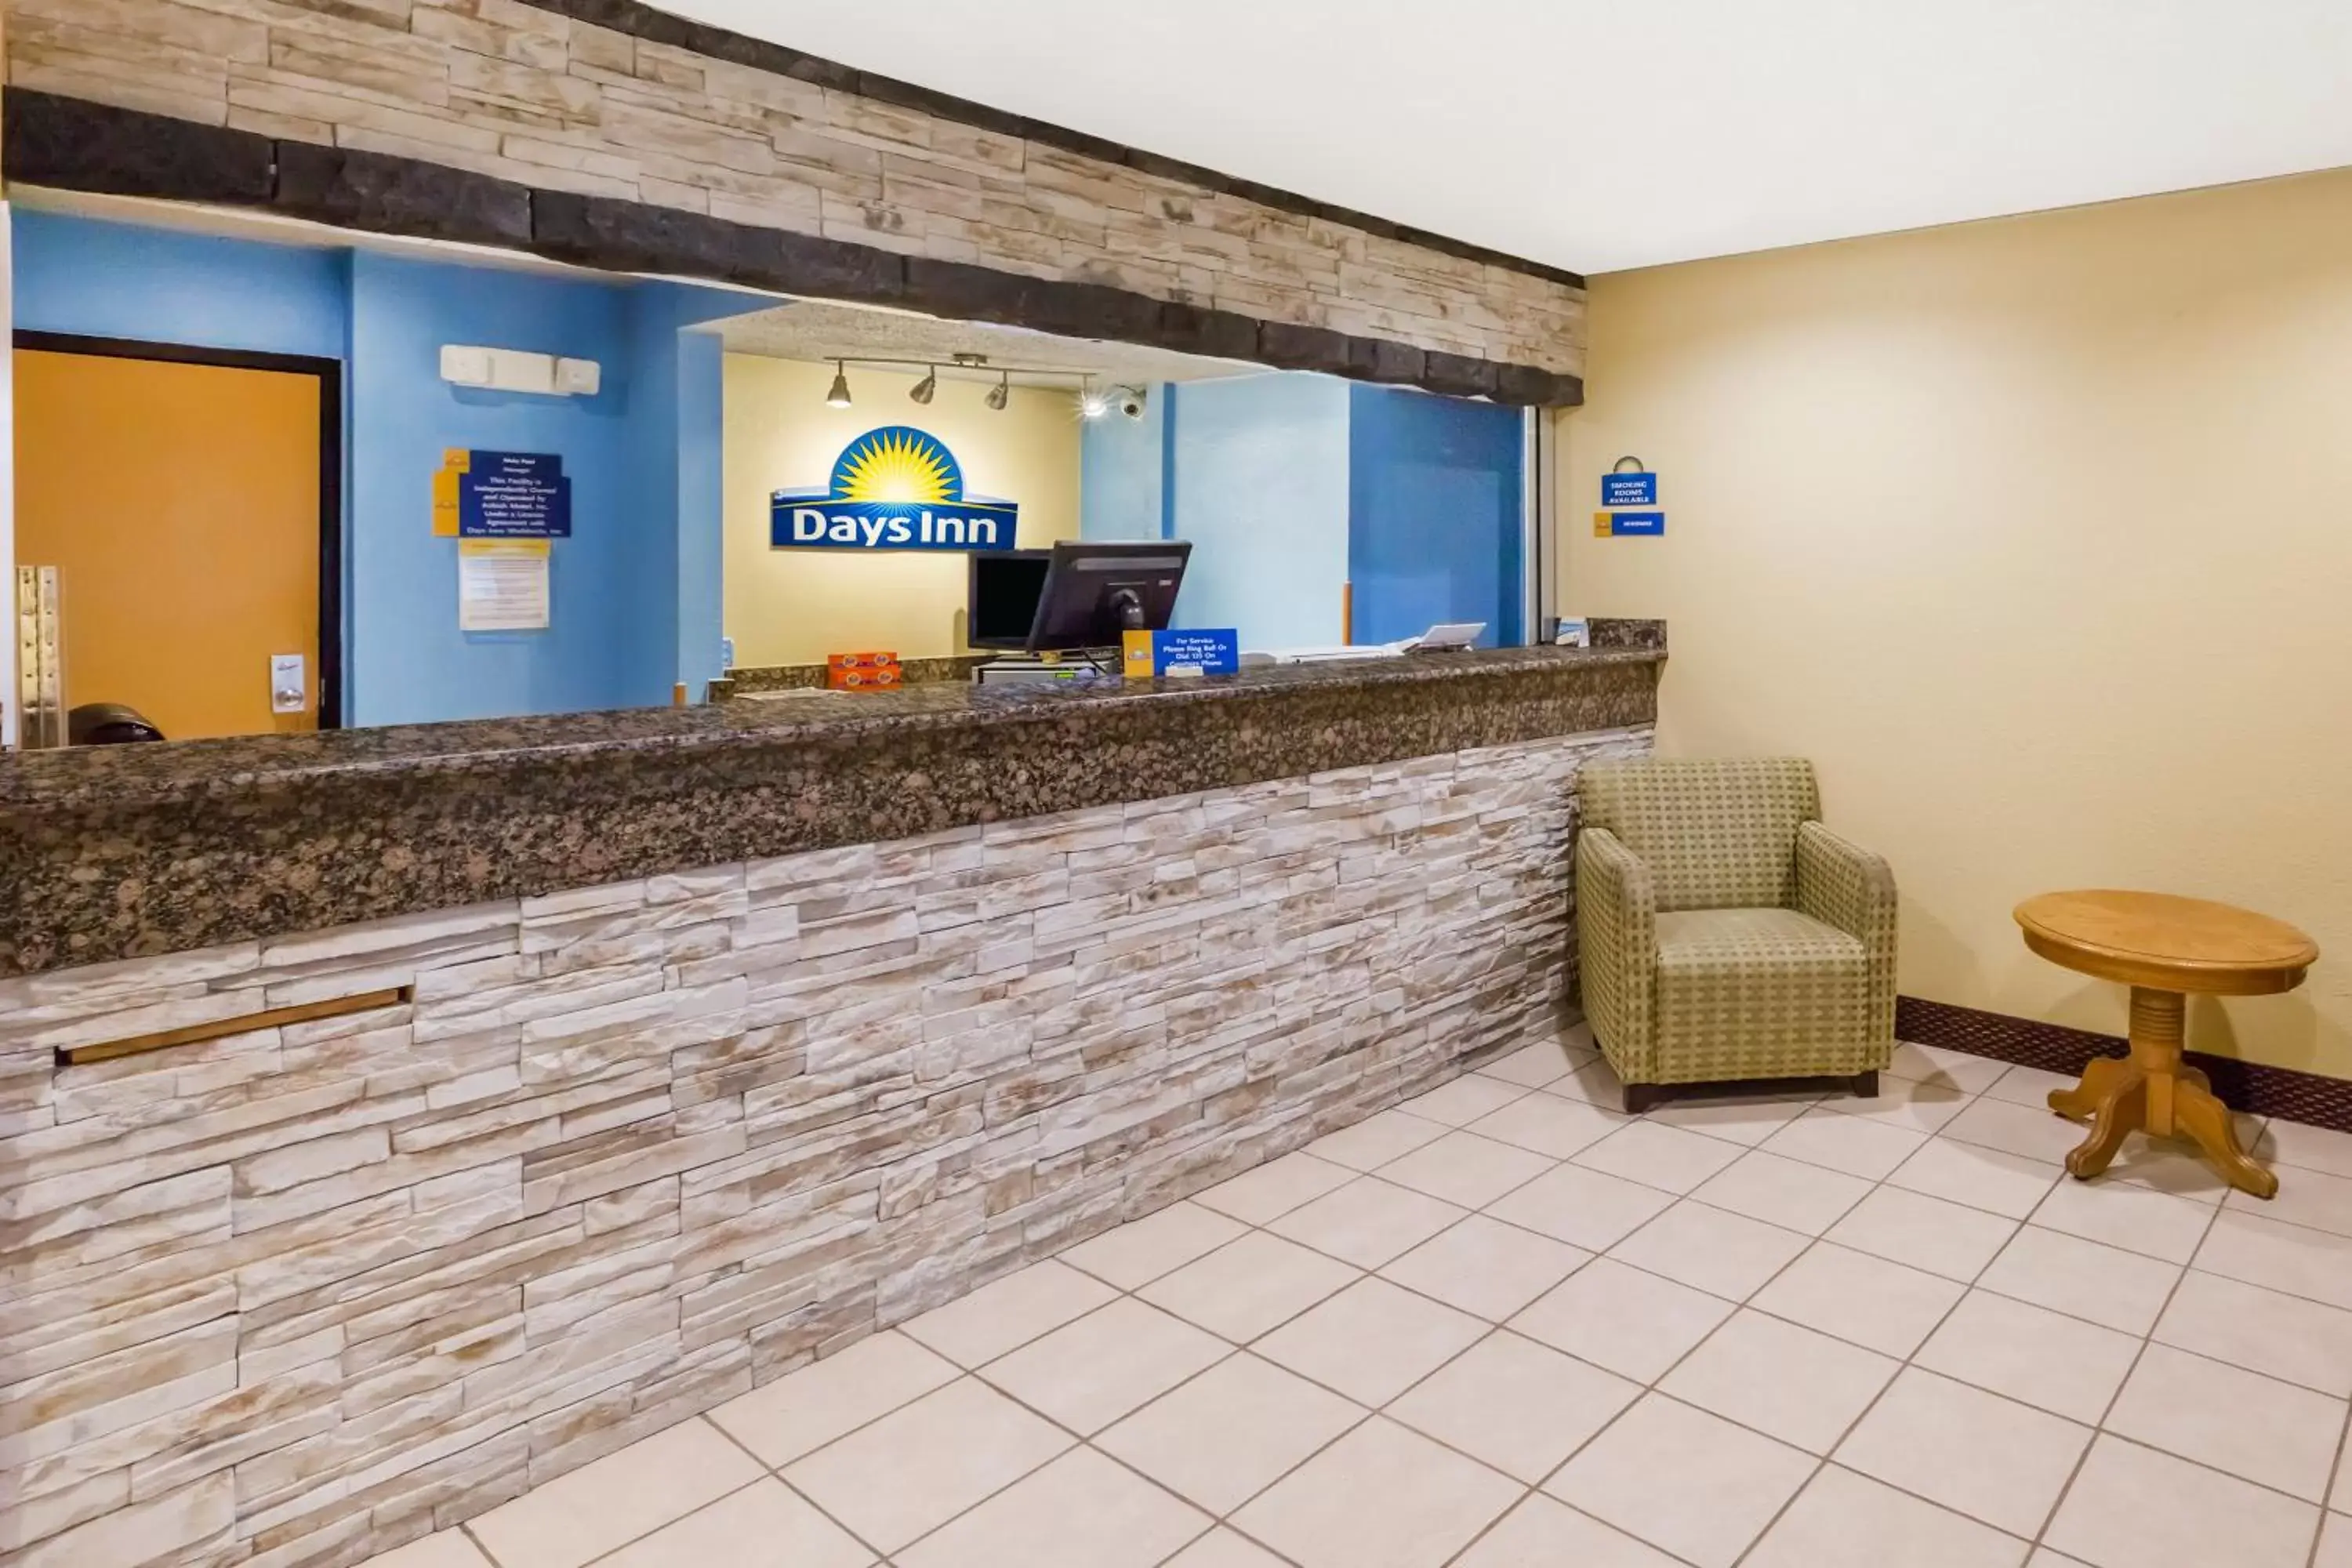 Lobby or reception, Lobby/Reception in Days Inn by Wyndham Ankeny - Des Moines